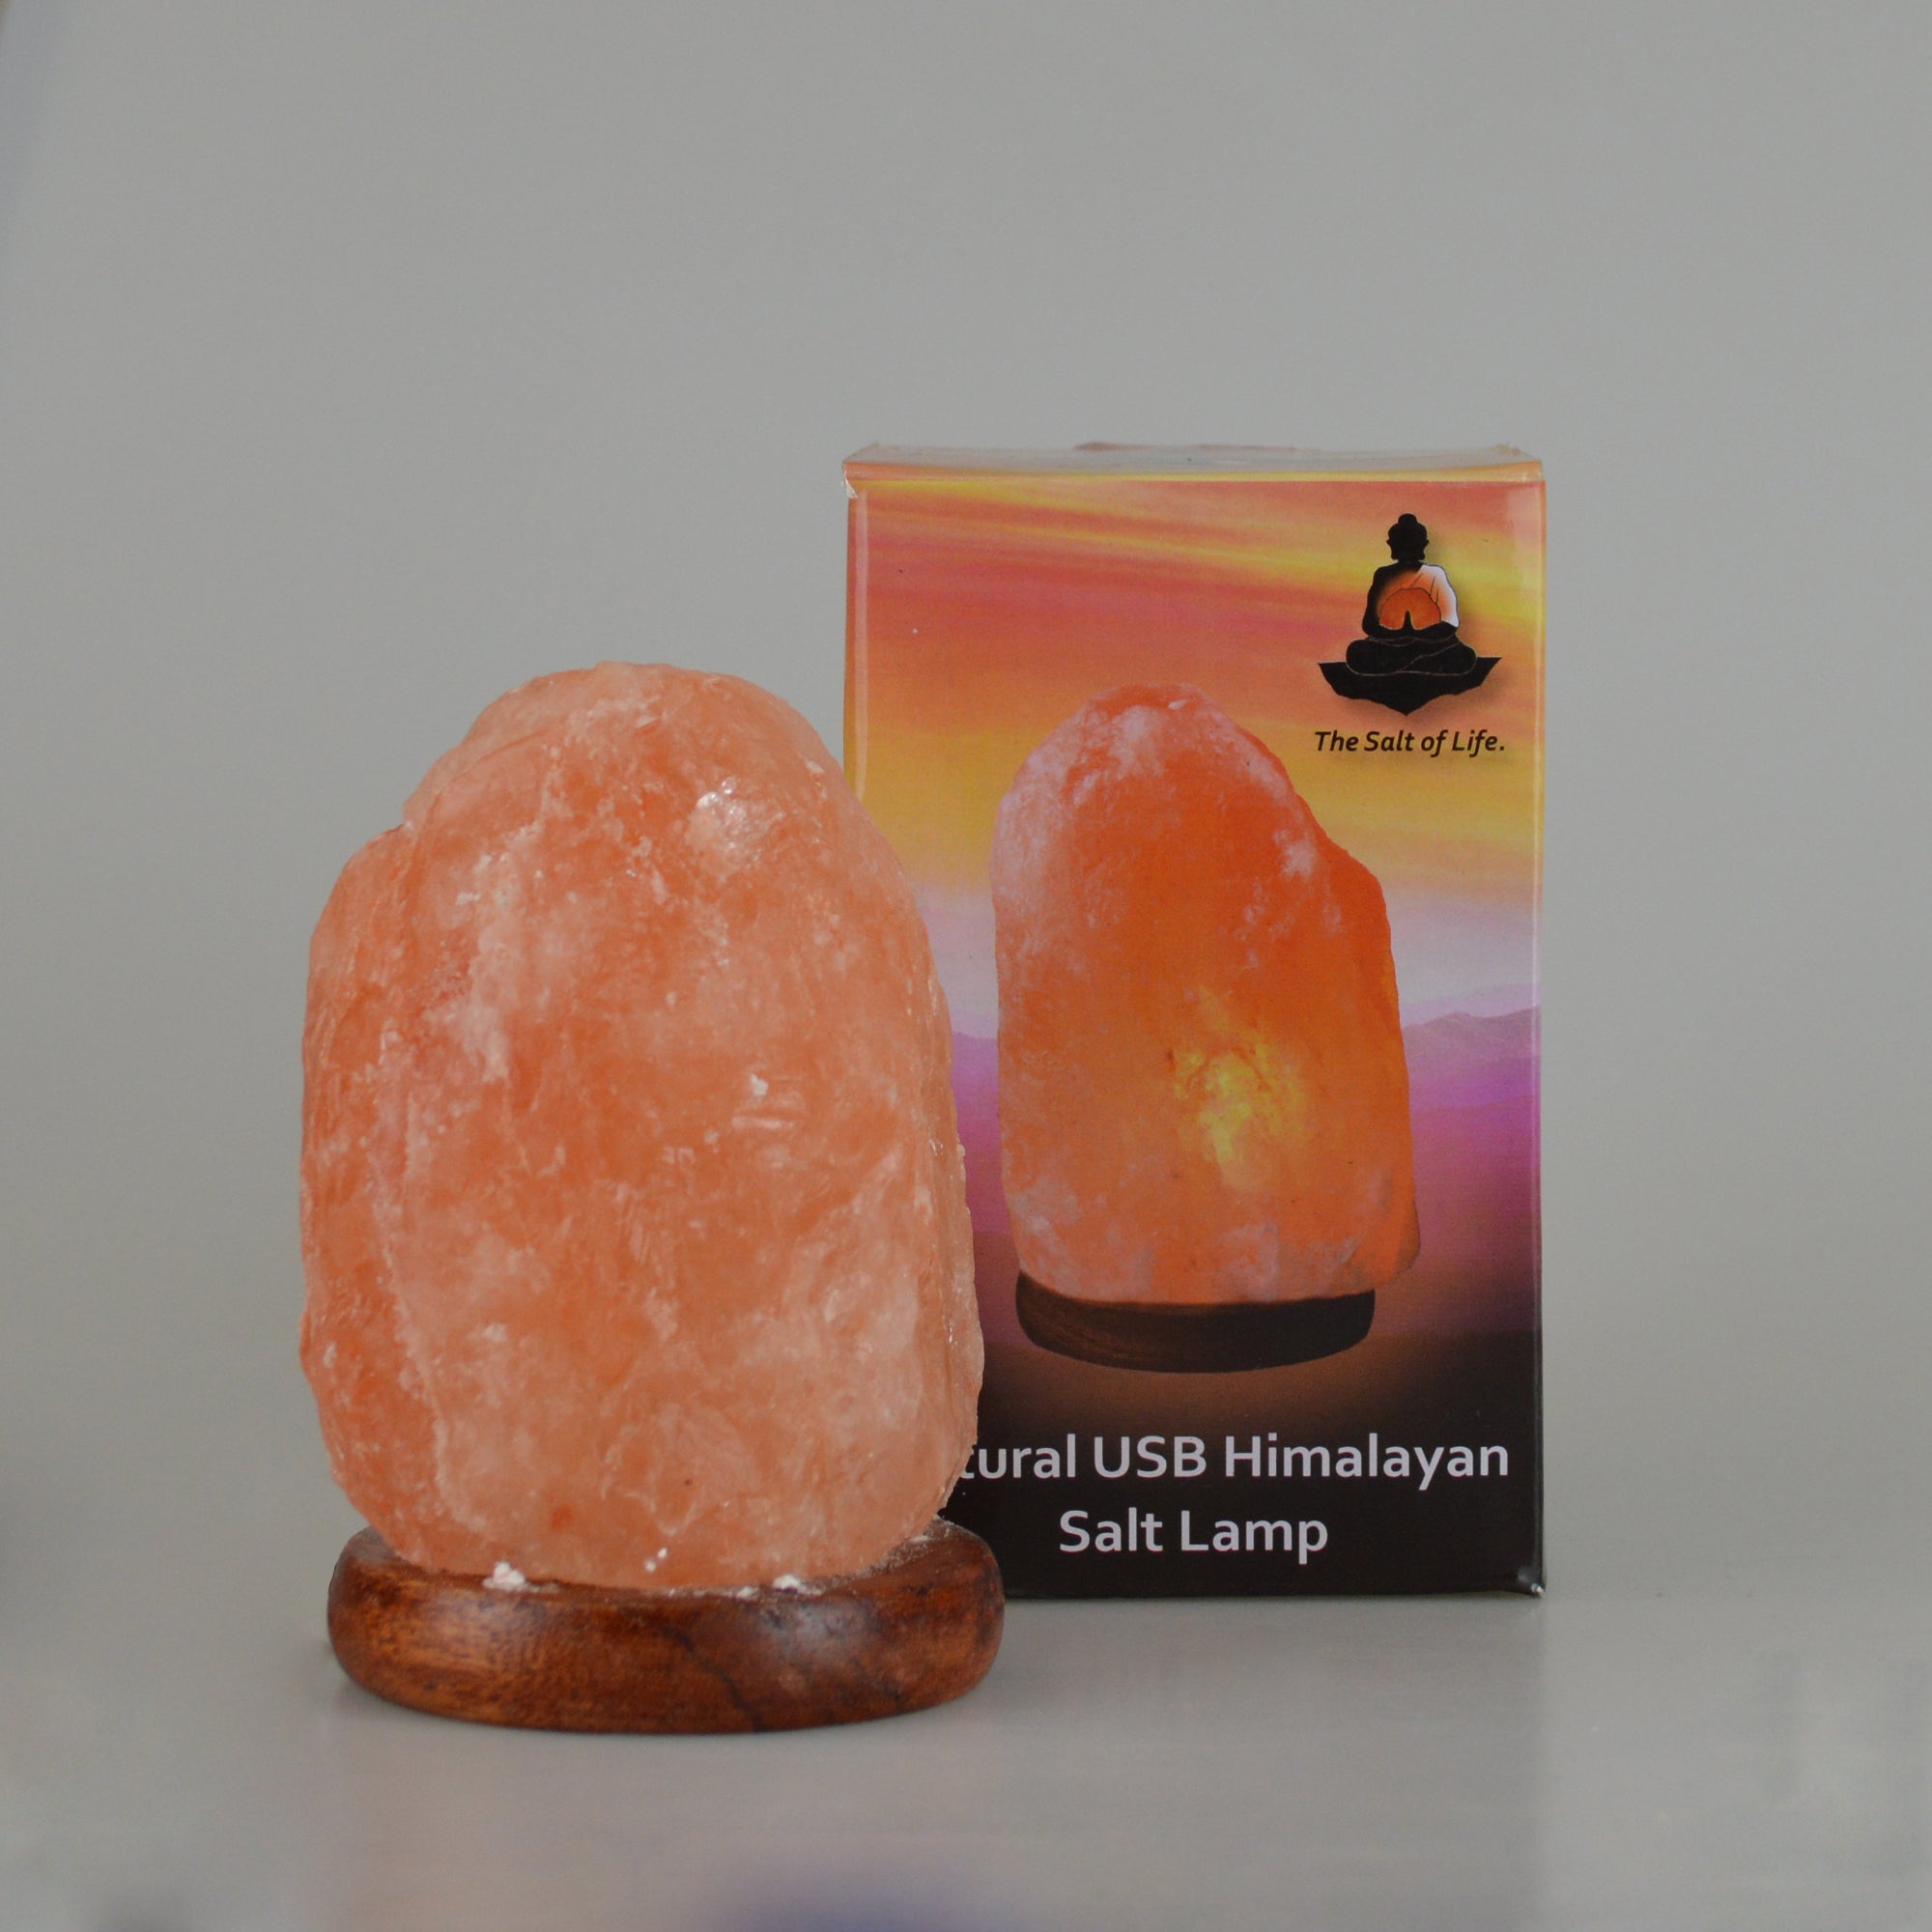 The Salt of Life - Himalayan Salt Lamp Natural USB